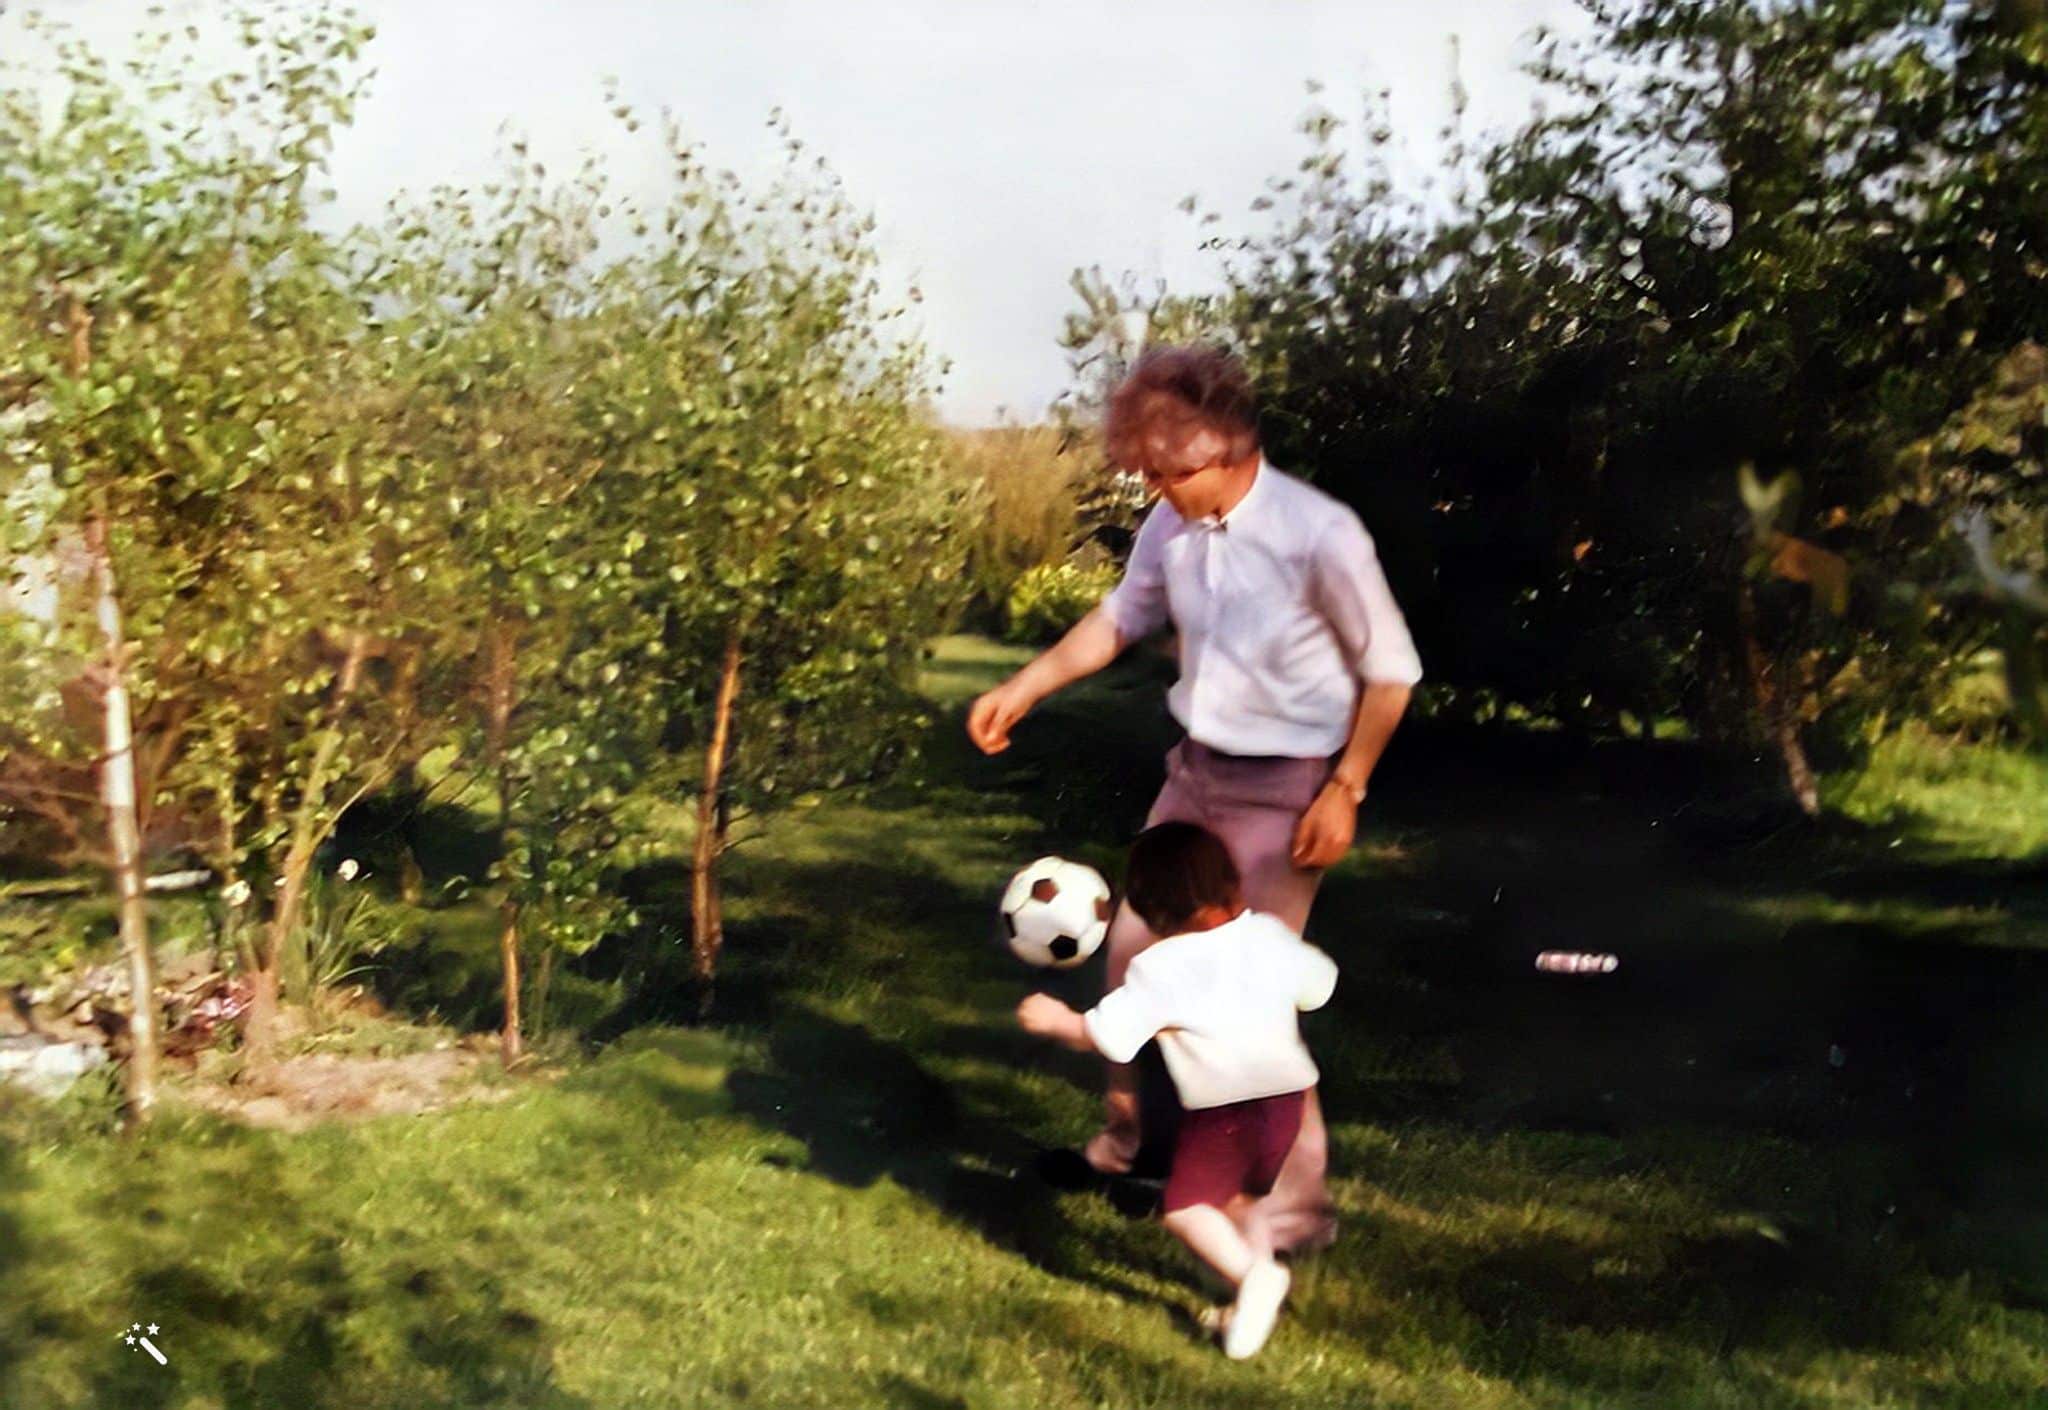 Ramón padre jugando a fútbol. Foto mejorada y coloreada por MyHeritage